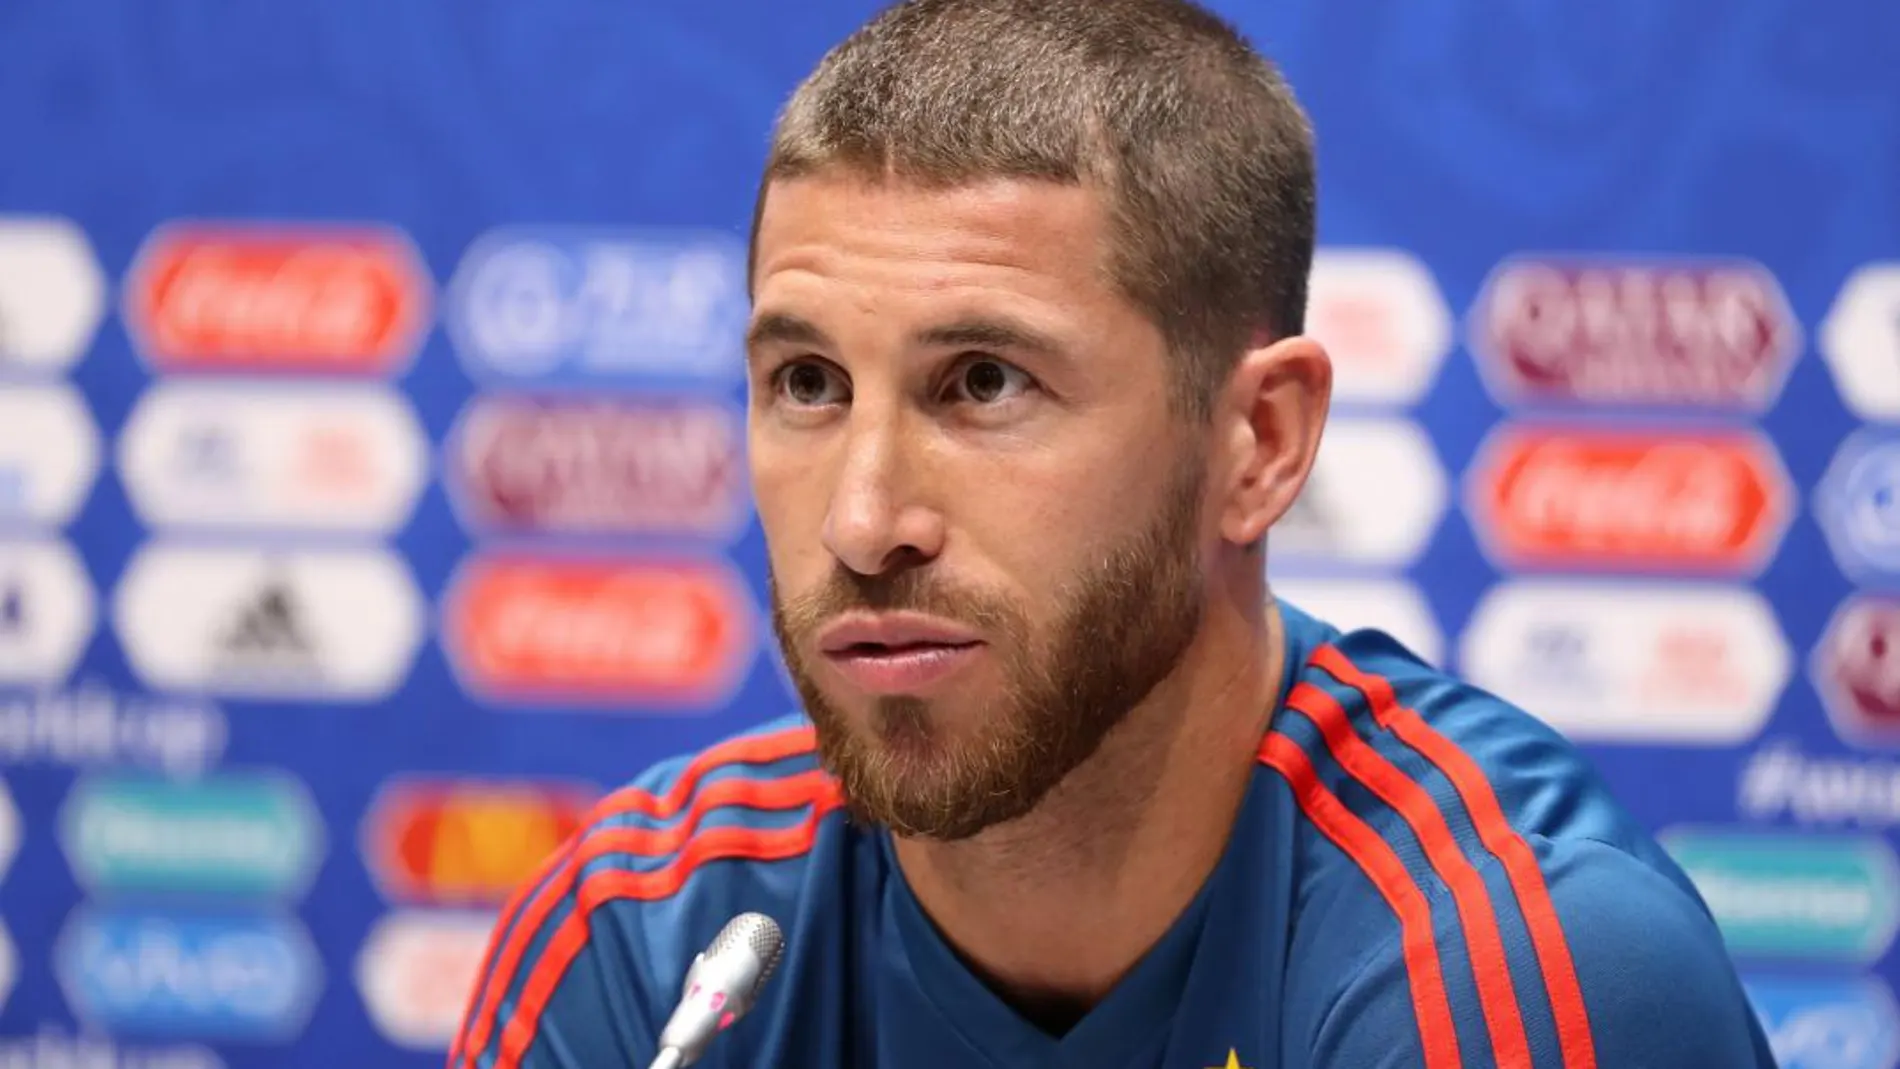 El capitán de la selección española, Sergio Ramos, durante la rueda de prensa / Foto: Reuters